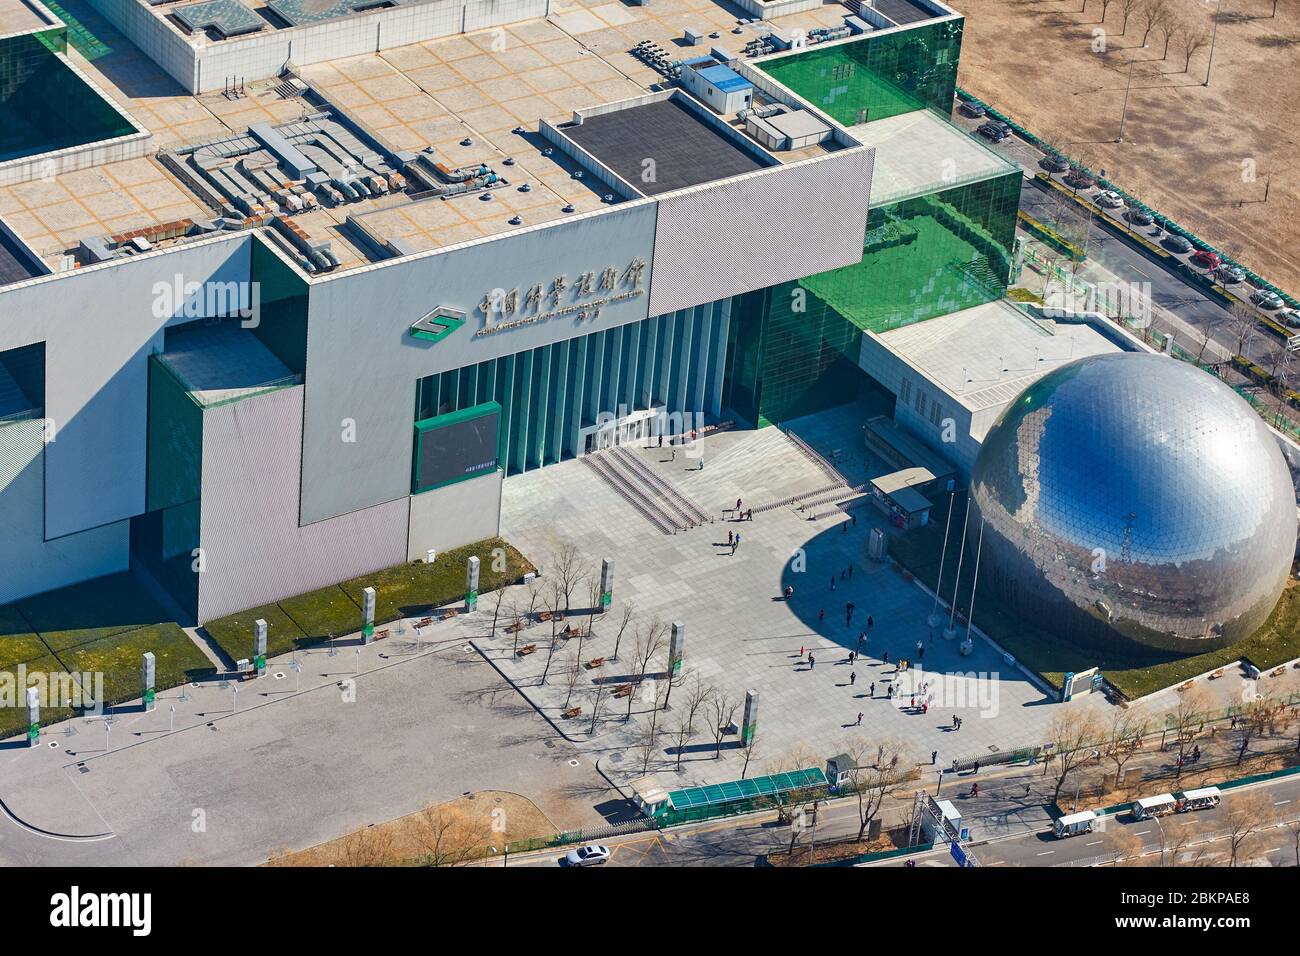 Pechino / Cina - 20 febbraio 2016: Veduta aerea del Museo della Scienza e della tecnologia della Cina, fondato nel 1988 a Pechino, Cina, situato nel bei Foto Stock